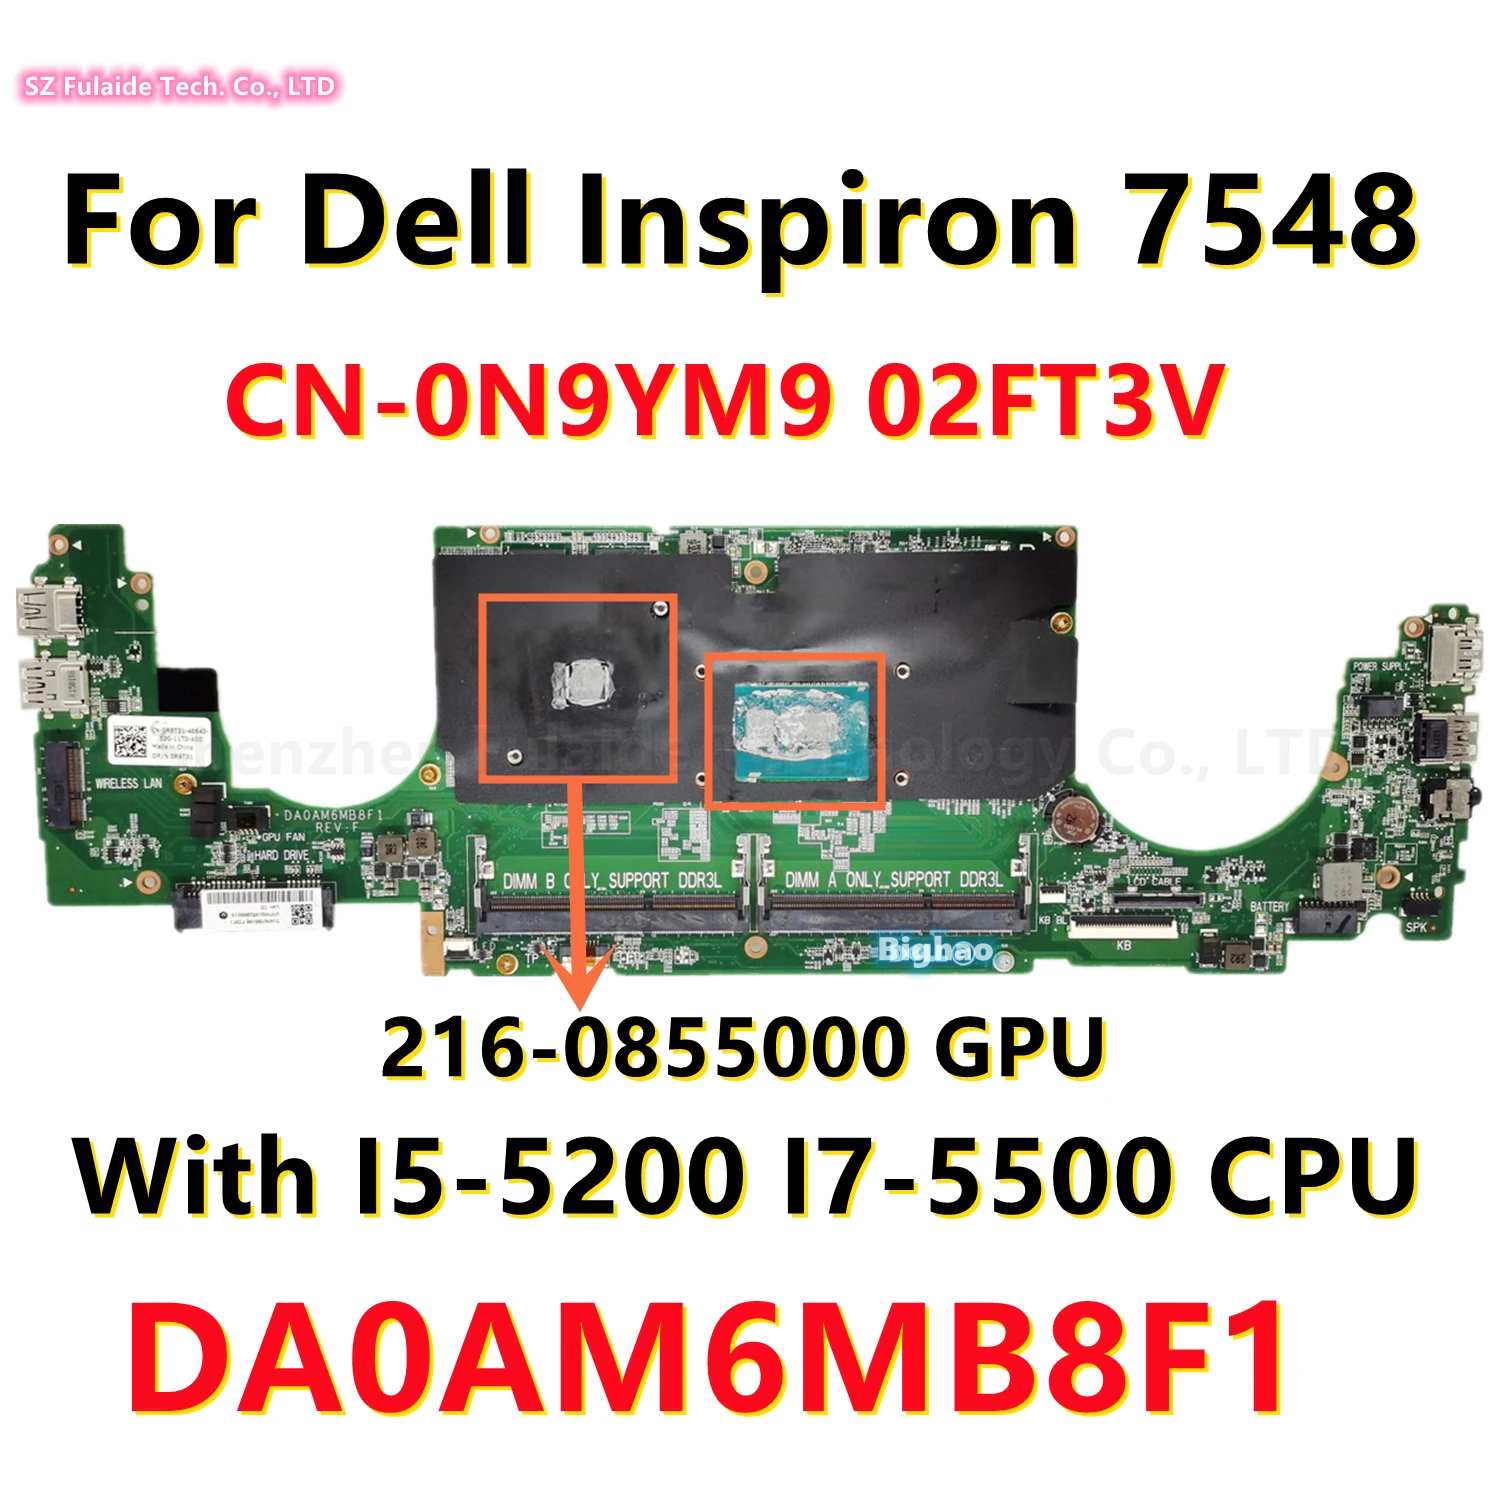 

Материнская плата DA0AM6MB8F1 для ноутбука Dell Inspiron 7548 с I5-5200 I7-5500, ЦП 216-0855000, графический процессор Φ 02FT3V 100% протестирован